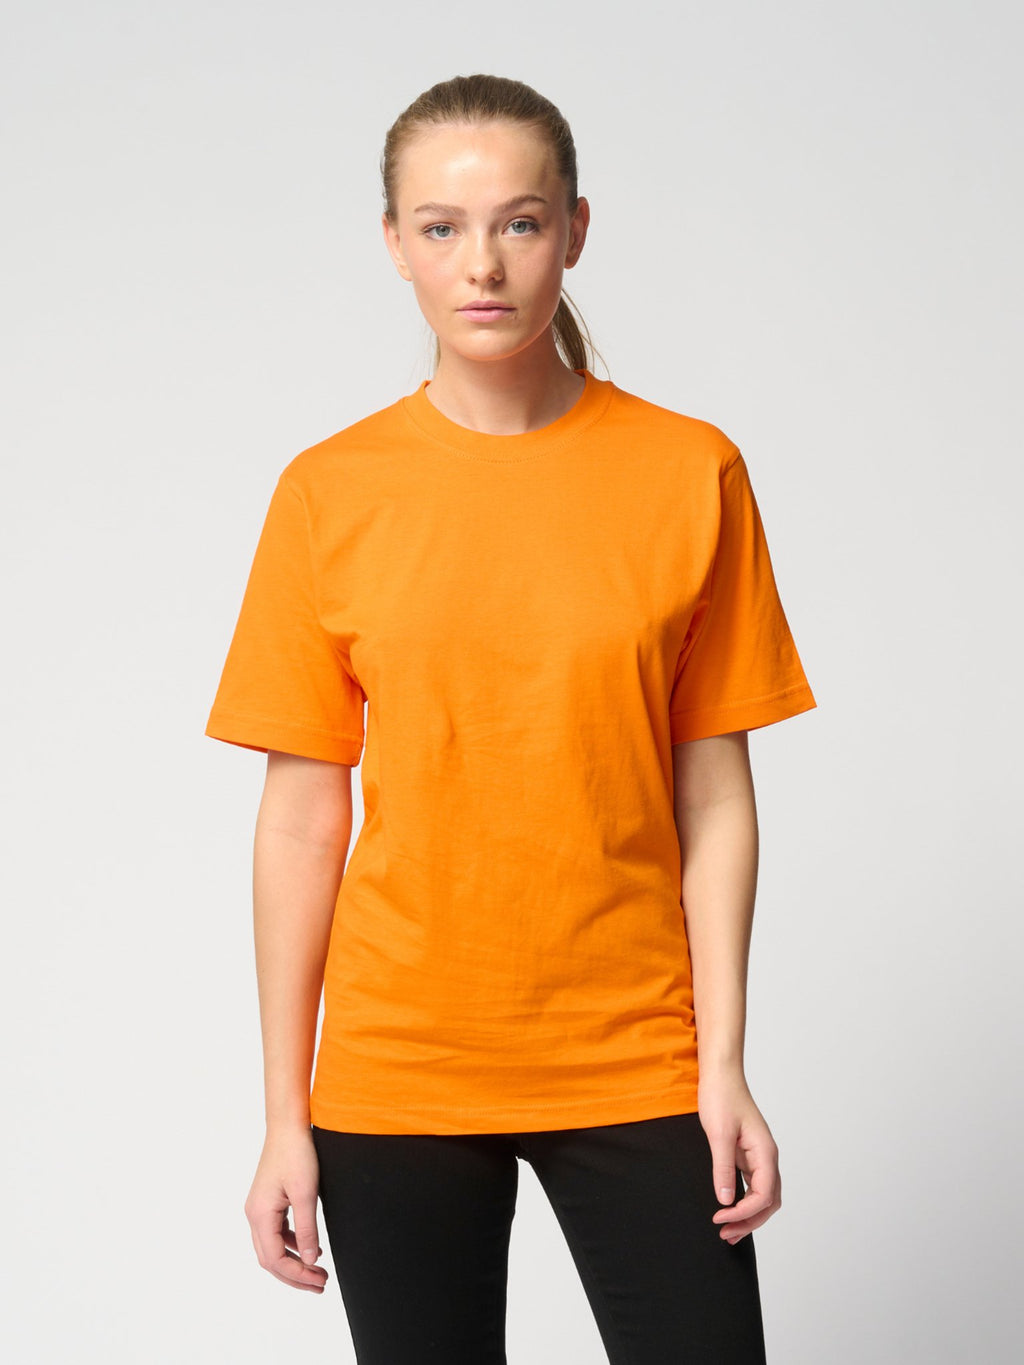 Camiseta de gran tamaño: paquete de mujeres (3 pcs).